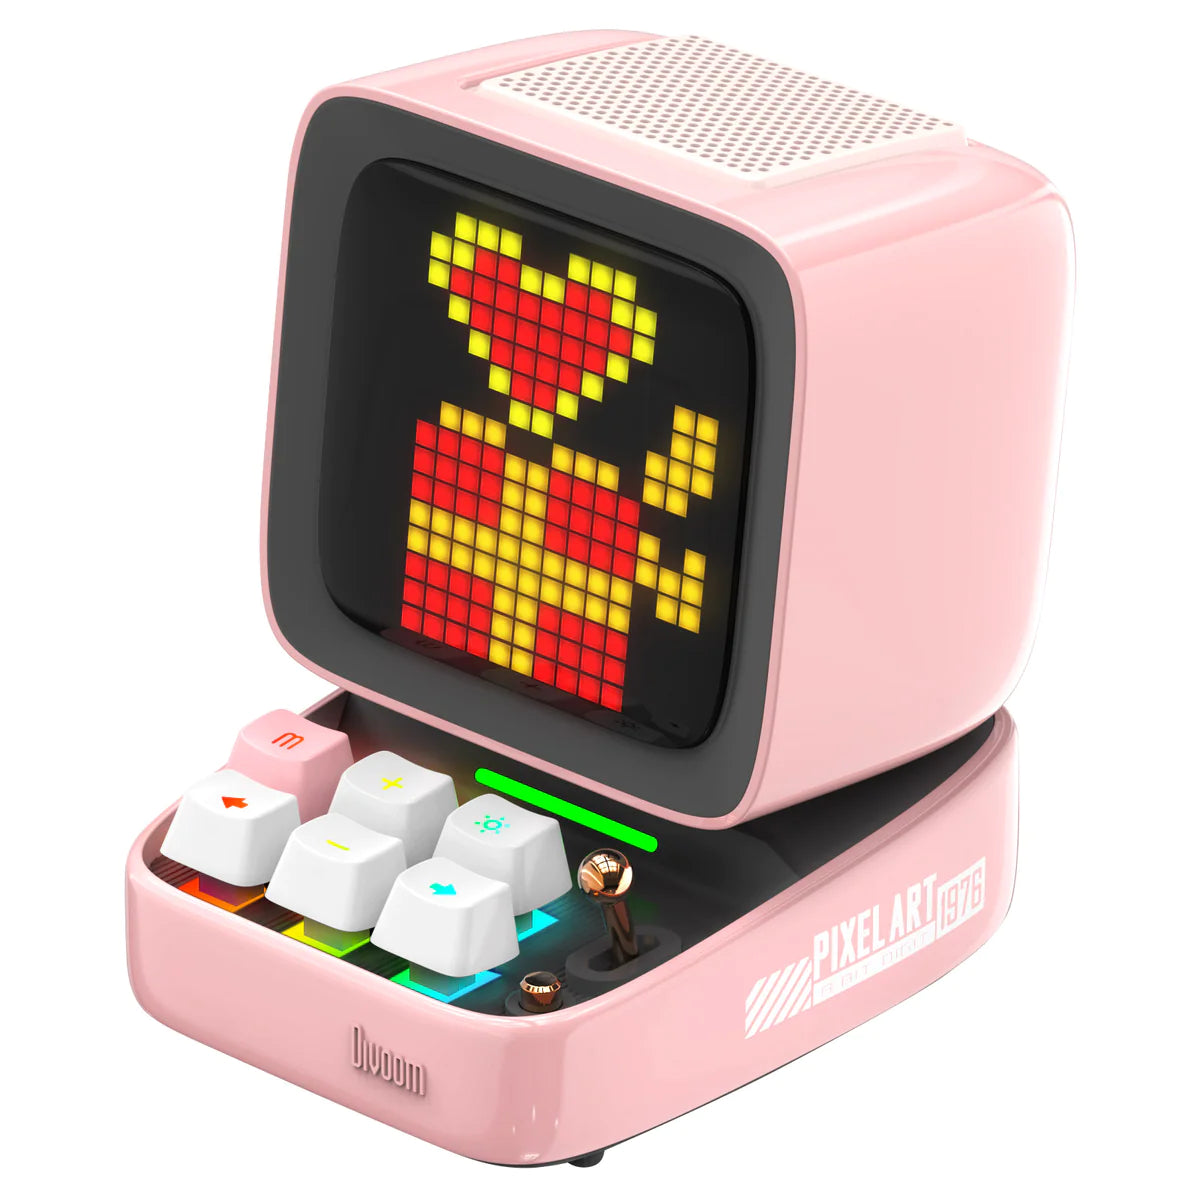 Divoom DitooPro Retro Pixel Art Lautsprecher Pink